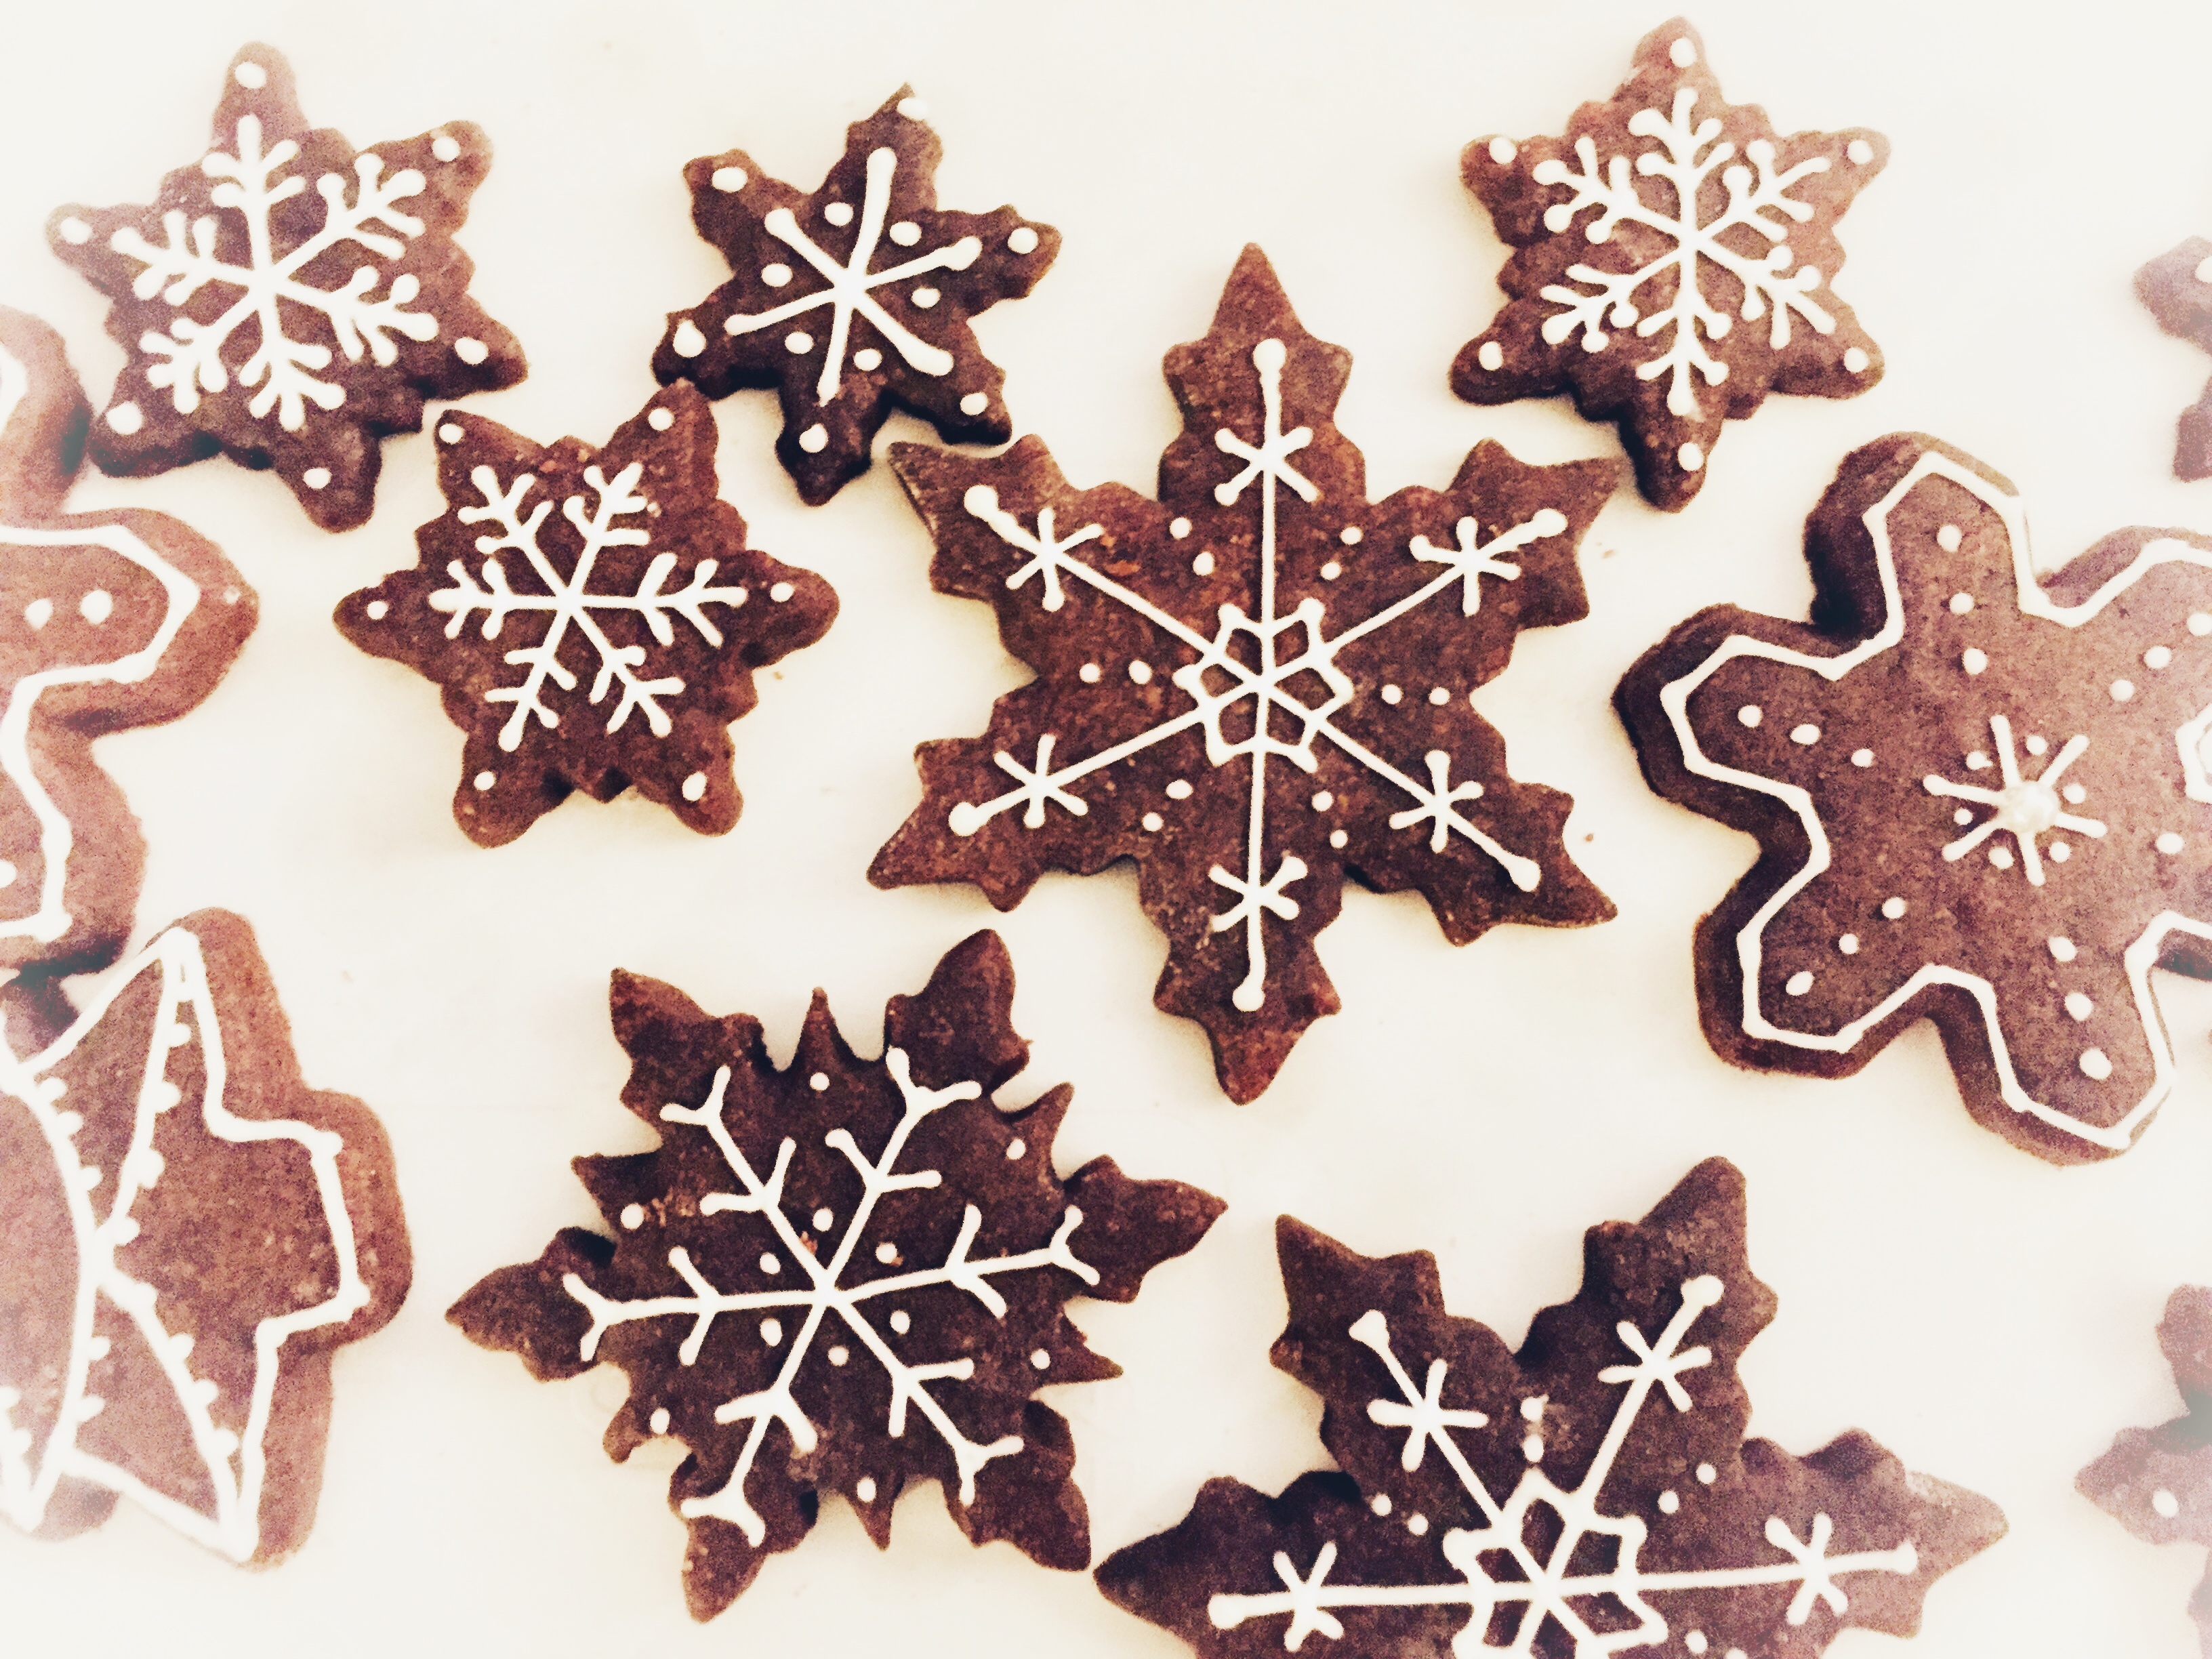 Impasto Per Biscotti Di Natale.Biscotti Di Natale Sablee Al Cacao Decorati Con Ghiaccia Reale Master Of Cakes